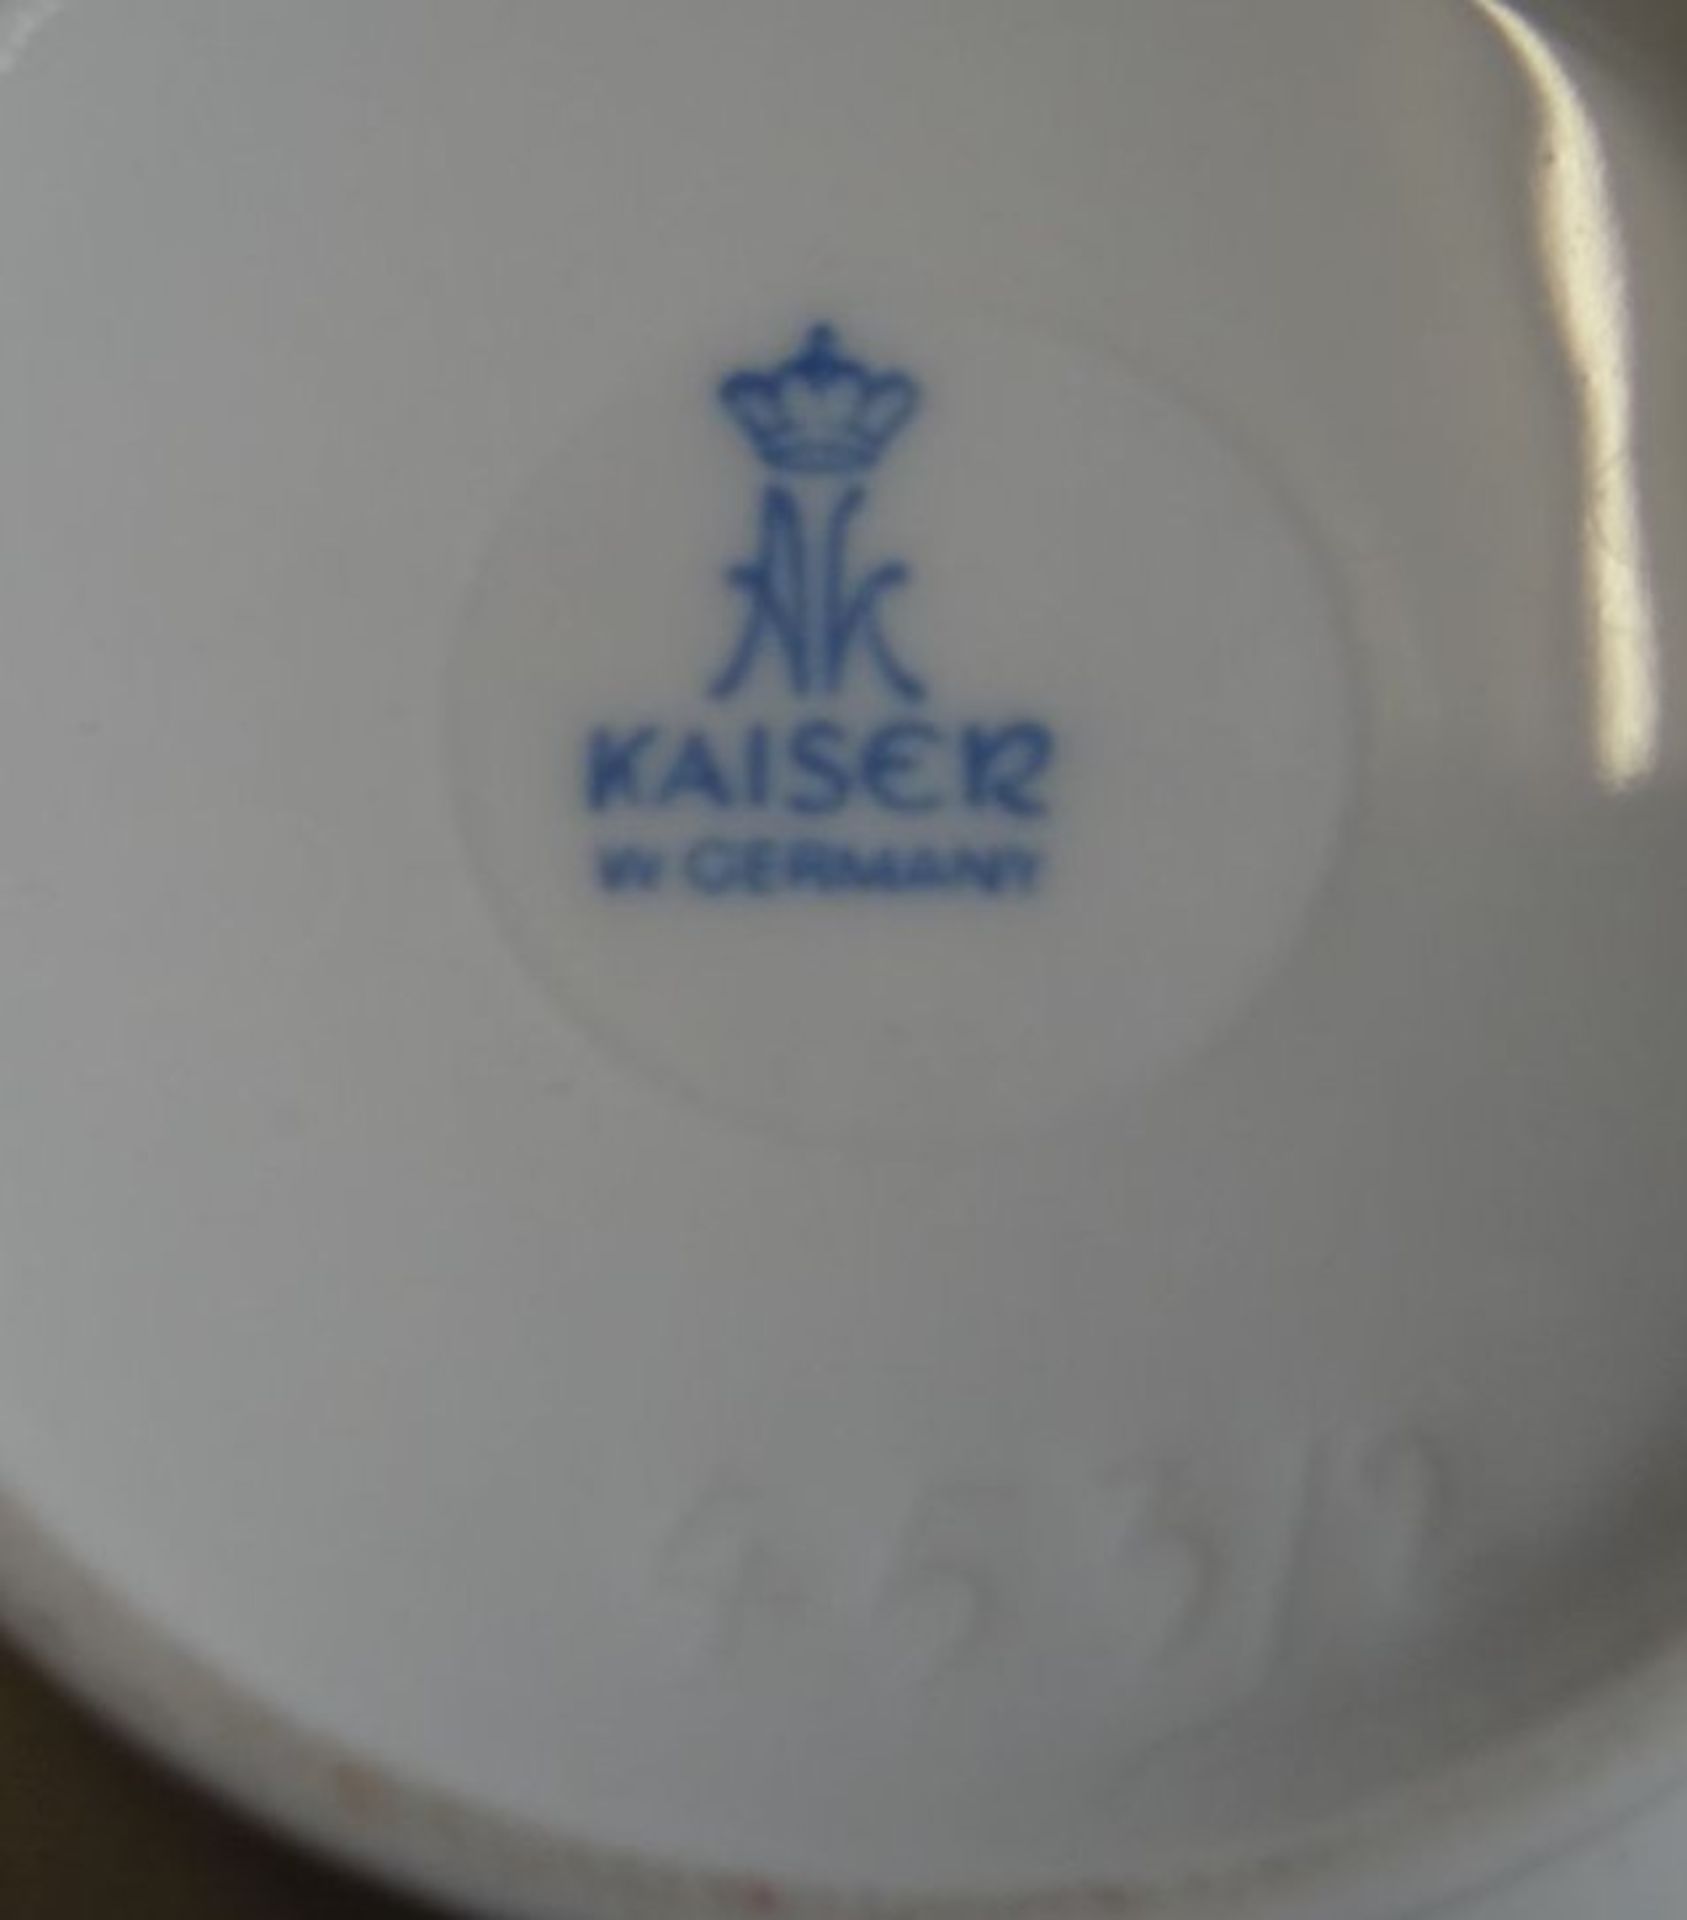 Vase "Kaiser" weiss, H-17 cm- - -22.61 % buyer's premium on the hammer priceVAT margin scheme, VAT - Bild 4 aus 4